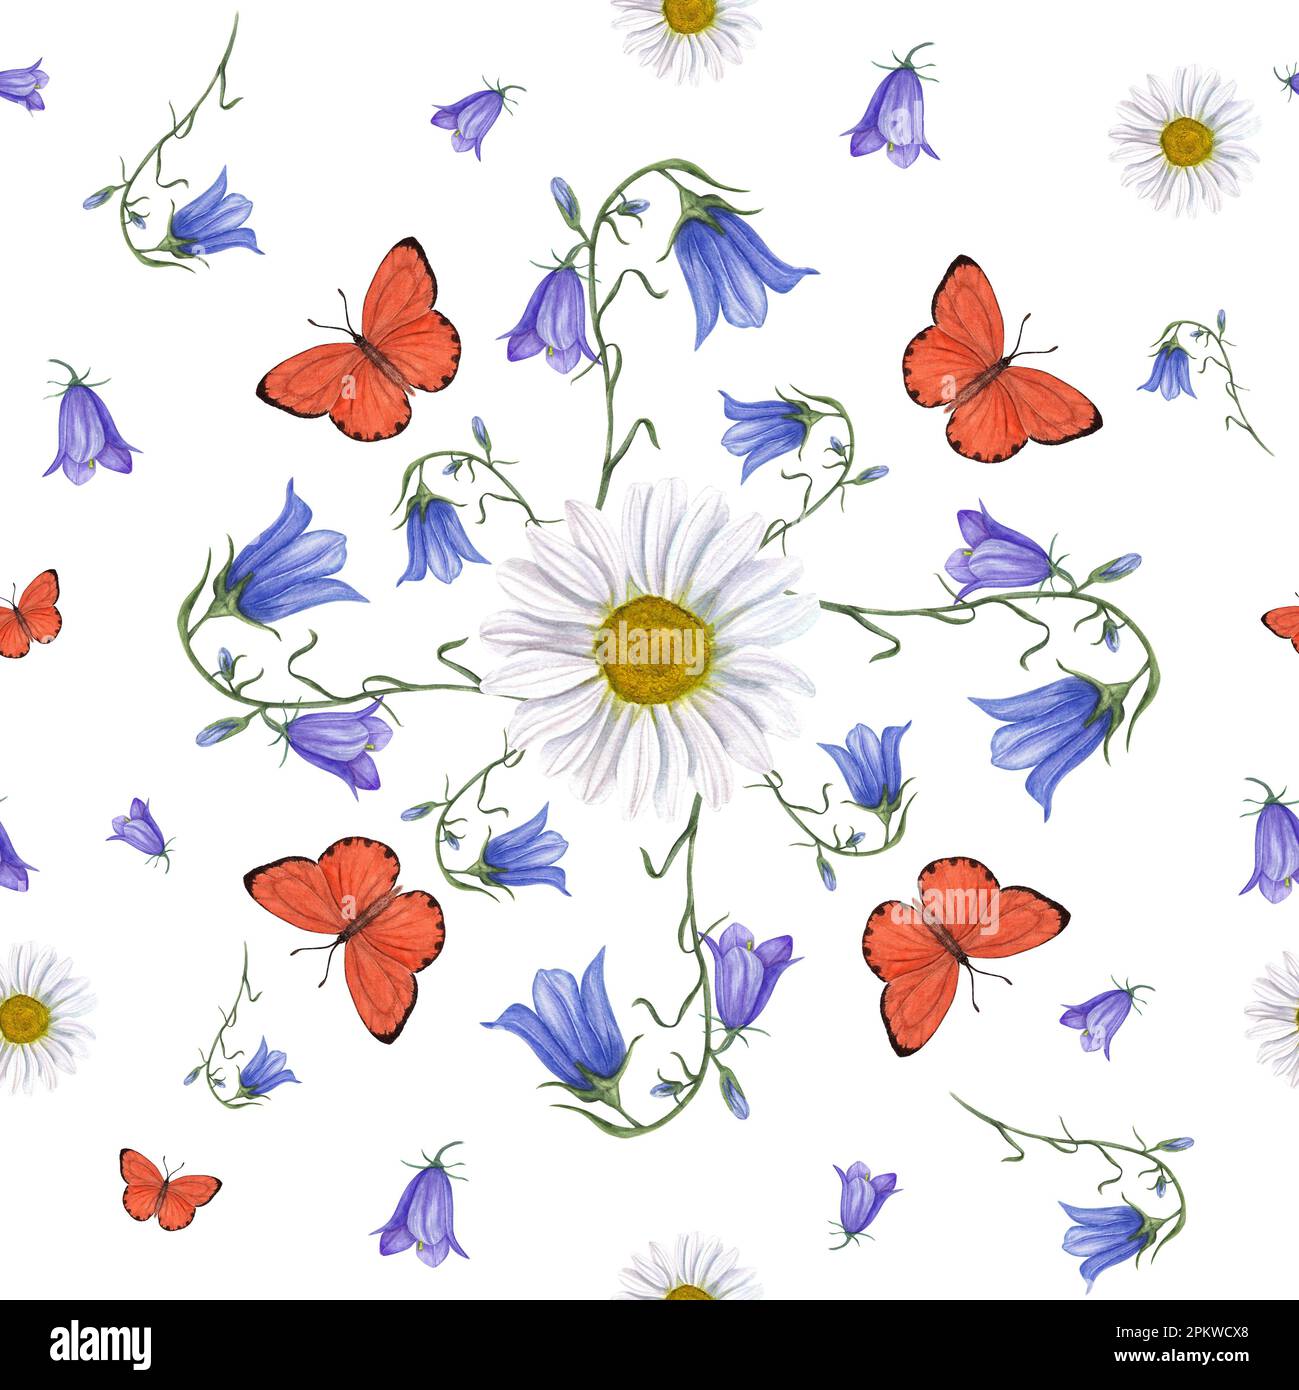 Motif aquarelle sans couture de Marguerite, de feuillure et de papillons lumineux isolés sur fond blanc. Pour la conception de cartes de vœux, modèle d'invitation Banque D'Images